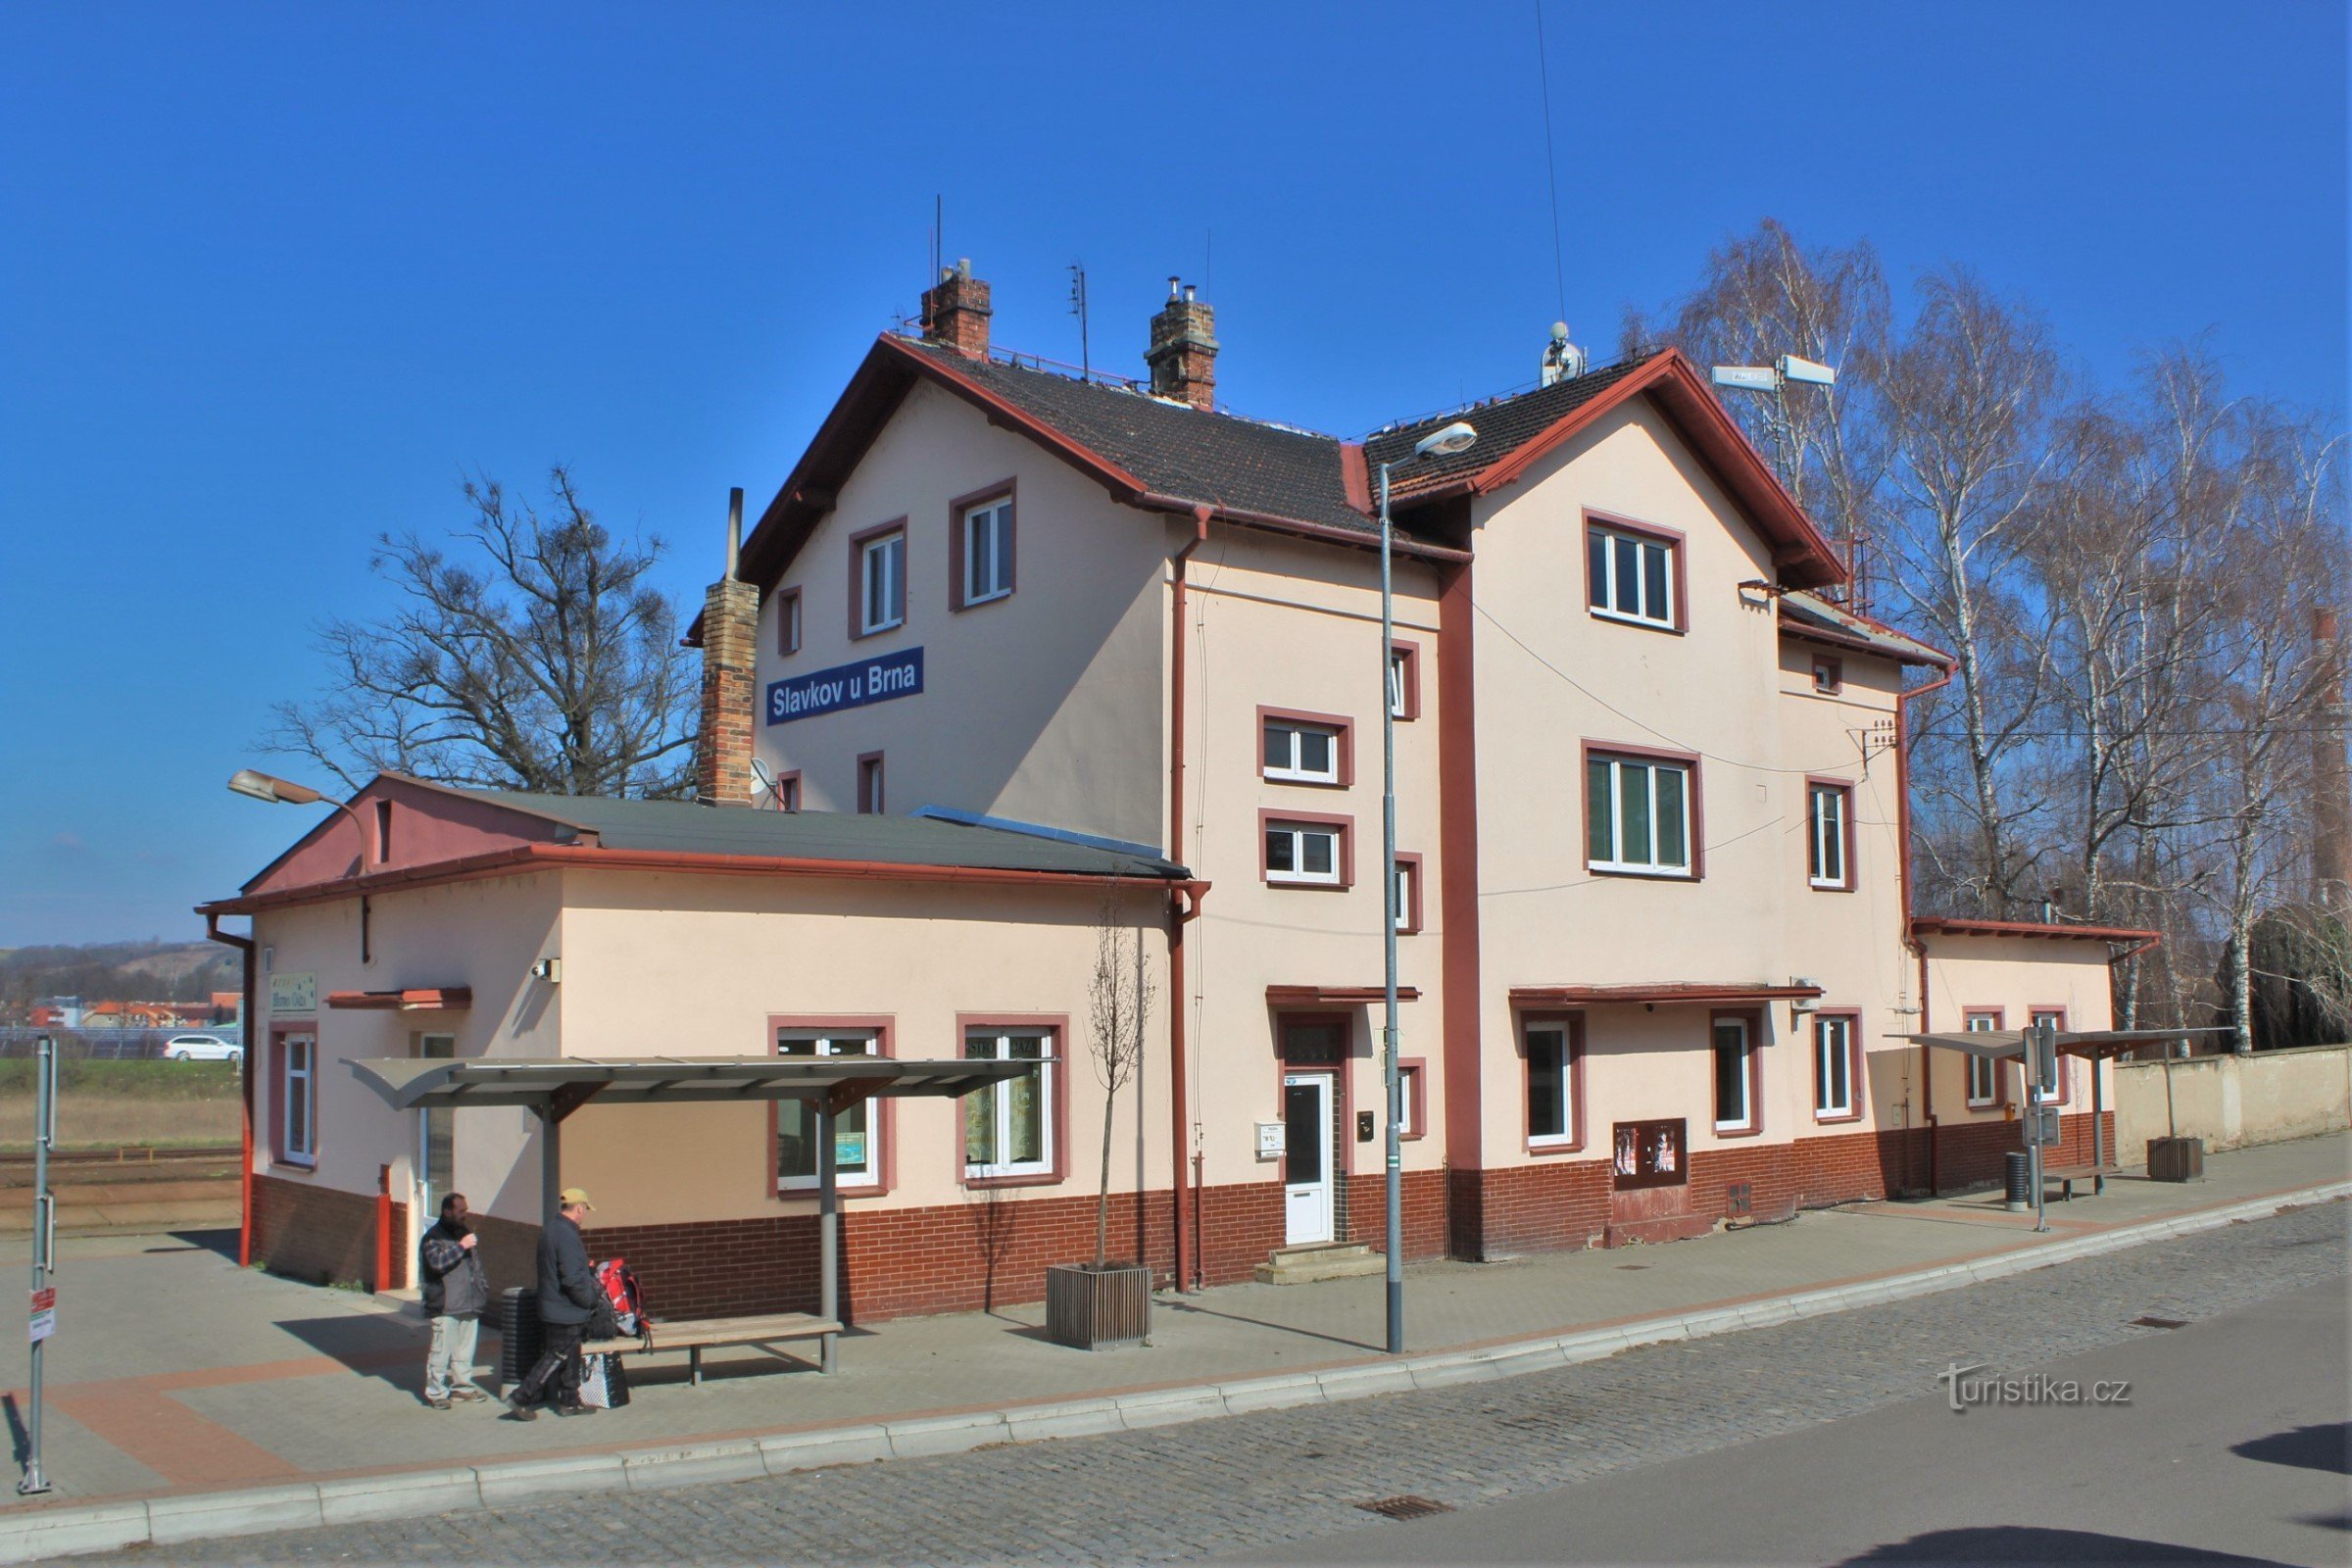 Clădirea stației din Slavkov lângă Brno